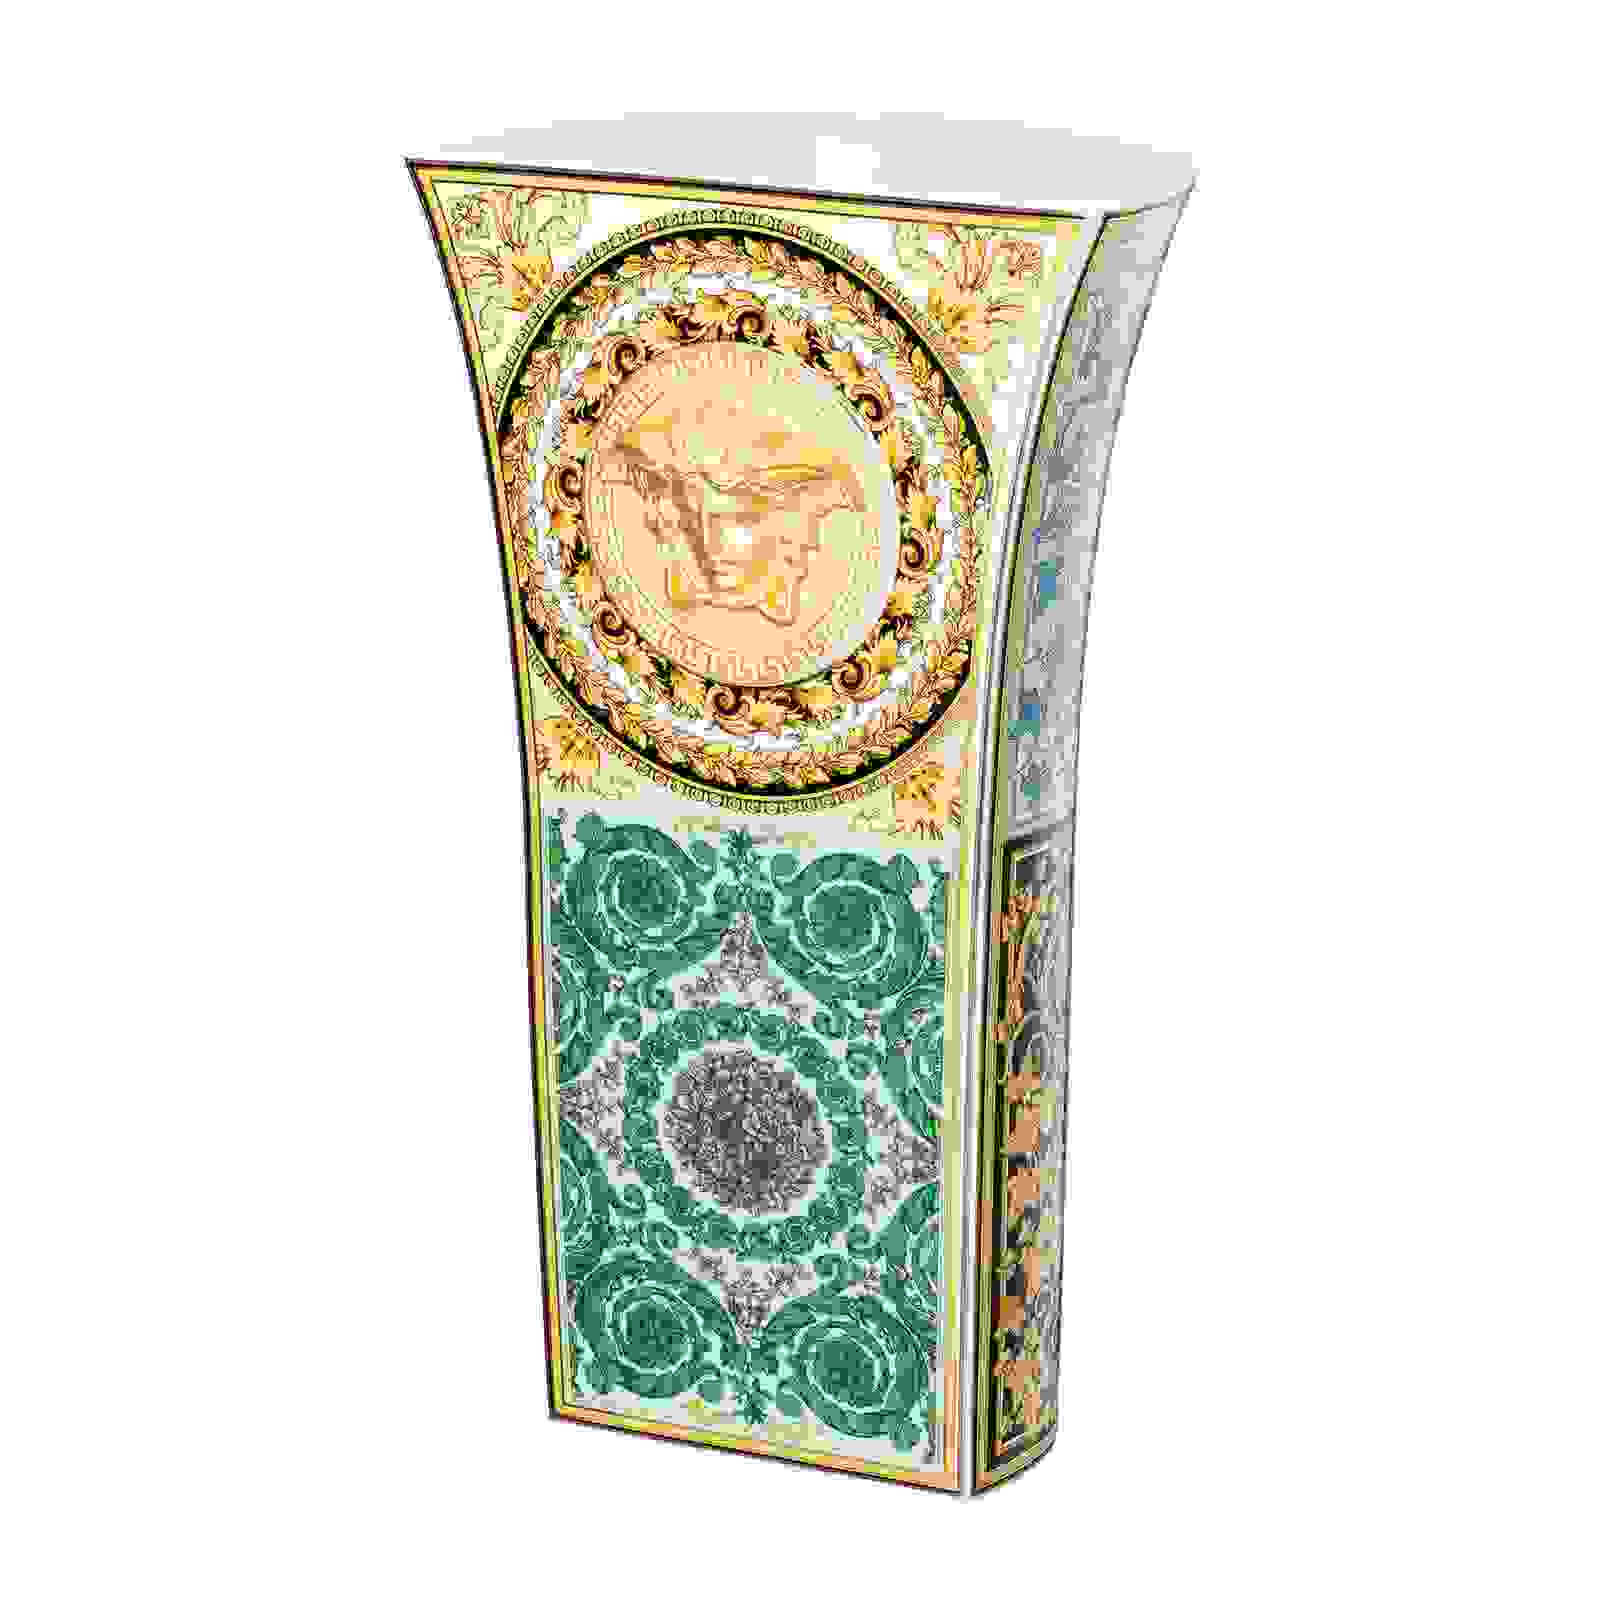 Versace Barocco Mosaic Vase 34 cm 4012437383690